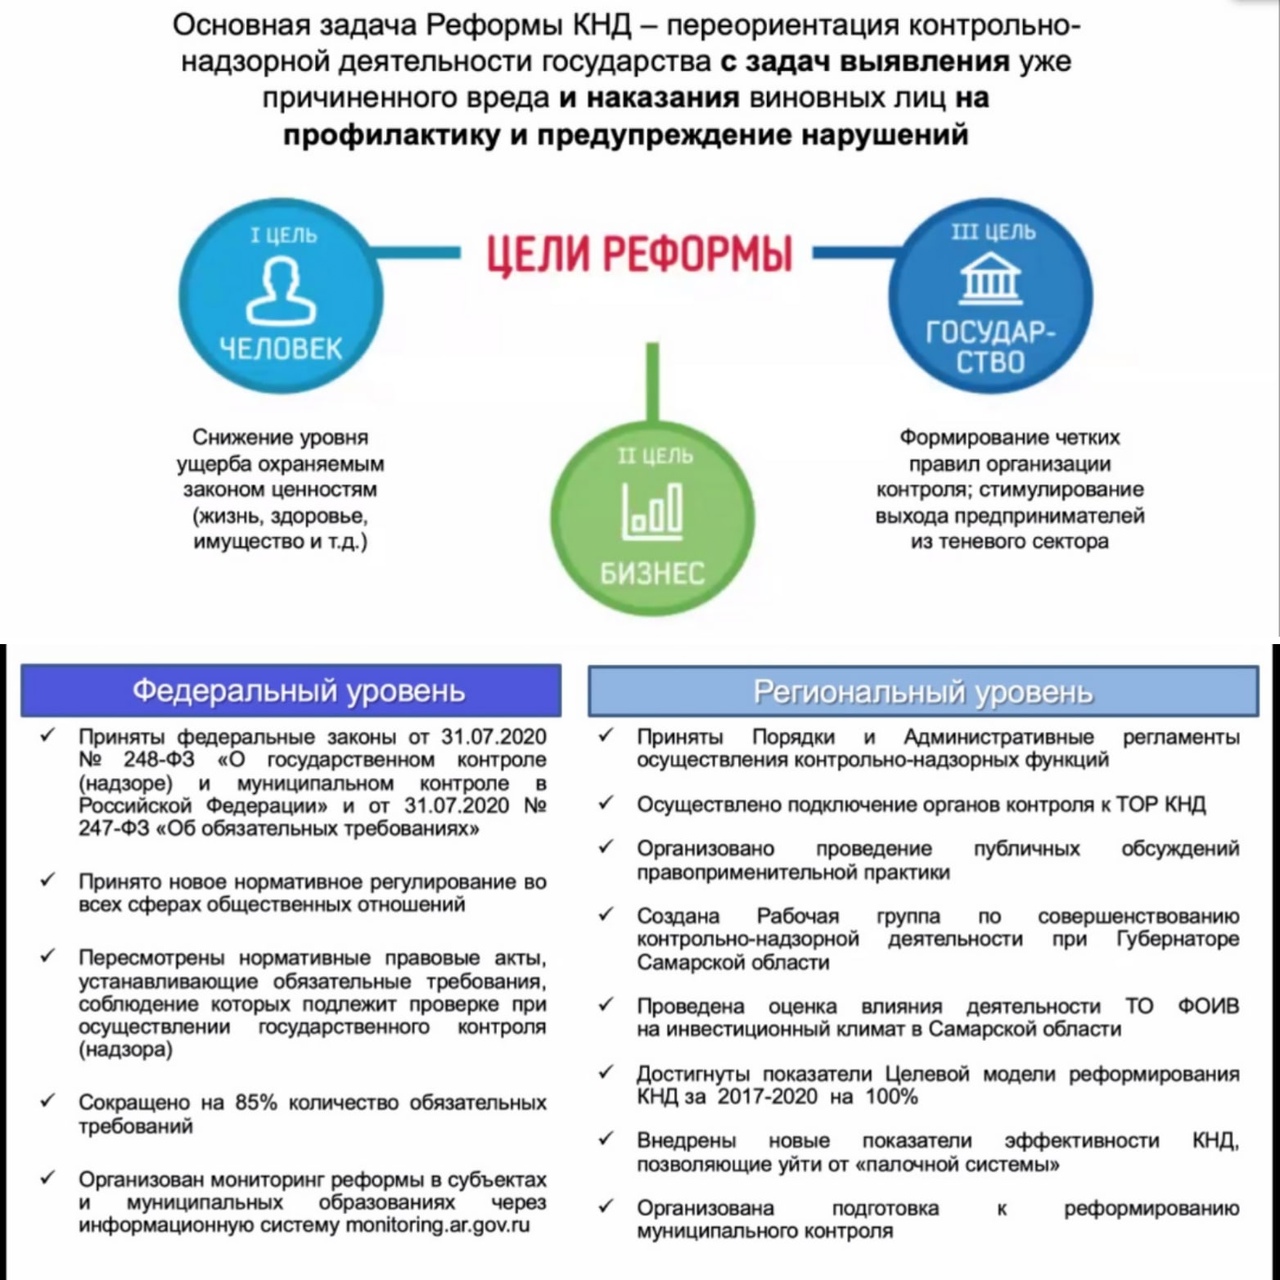 Реализация реформы контрольно-надзорной деятельности в Самарской области!